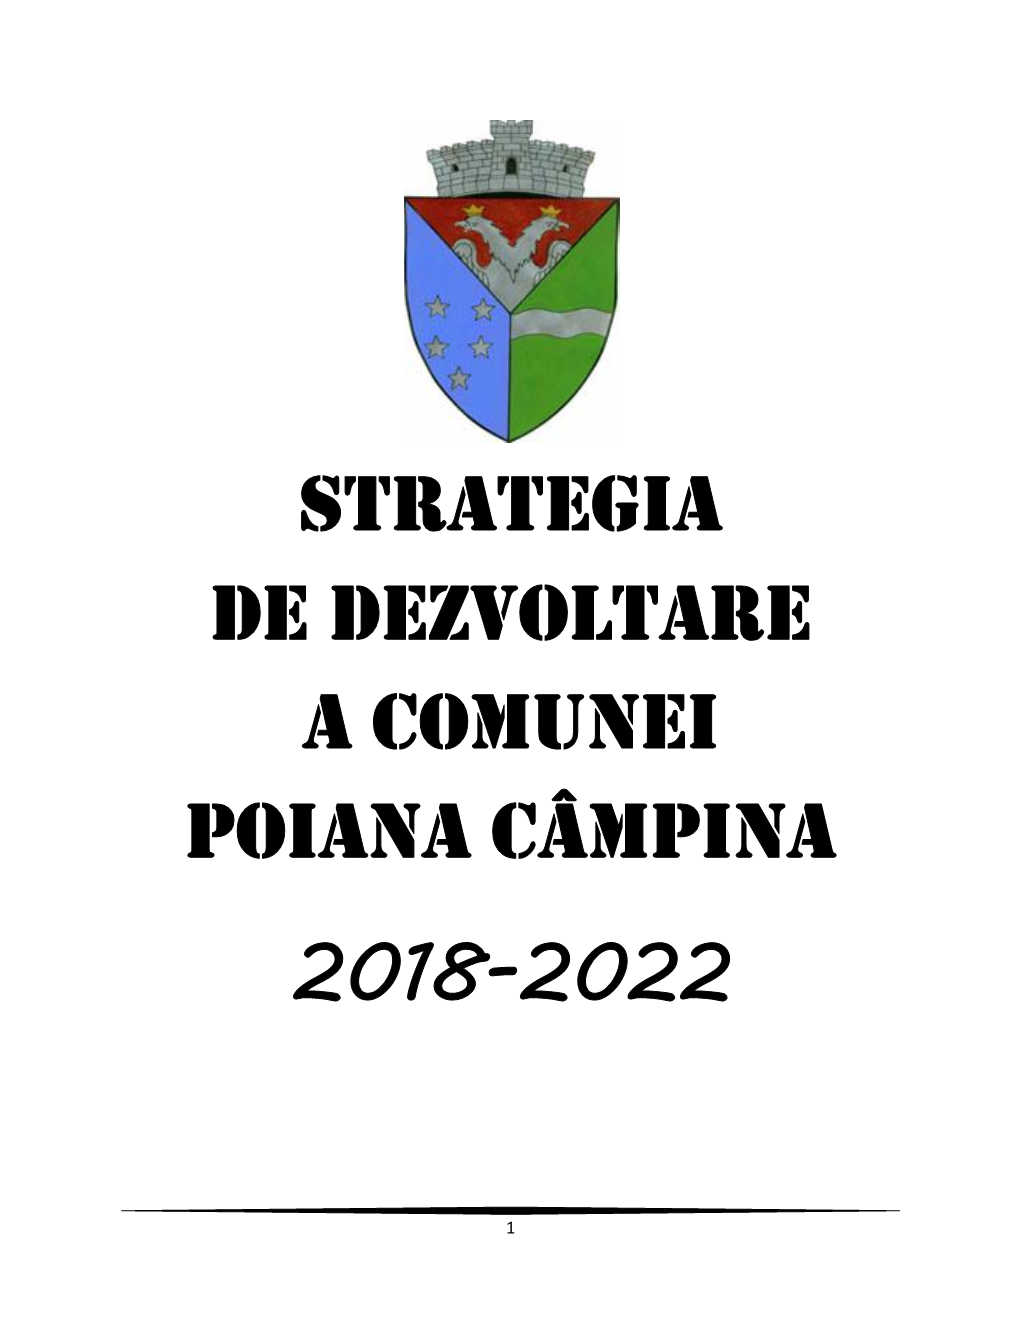 Strategia De Dezvoltare a Comunei Poiana Campina 2018